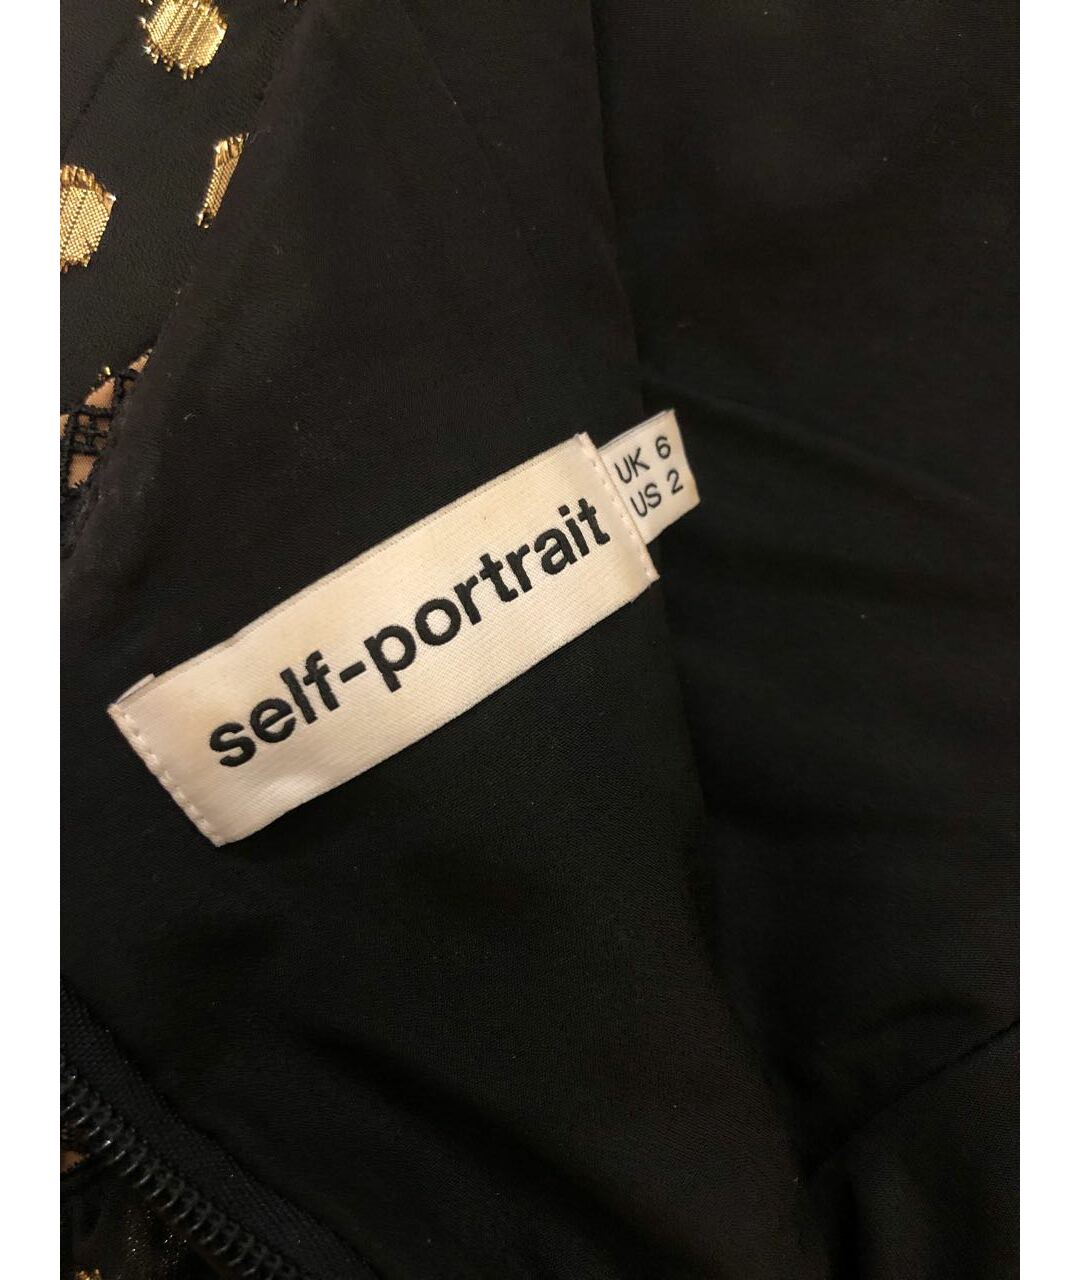 SELF-PORTRAIT Черное полиэстеровое повседневное платье, фото 3